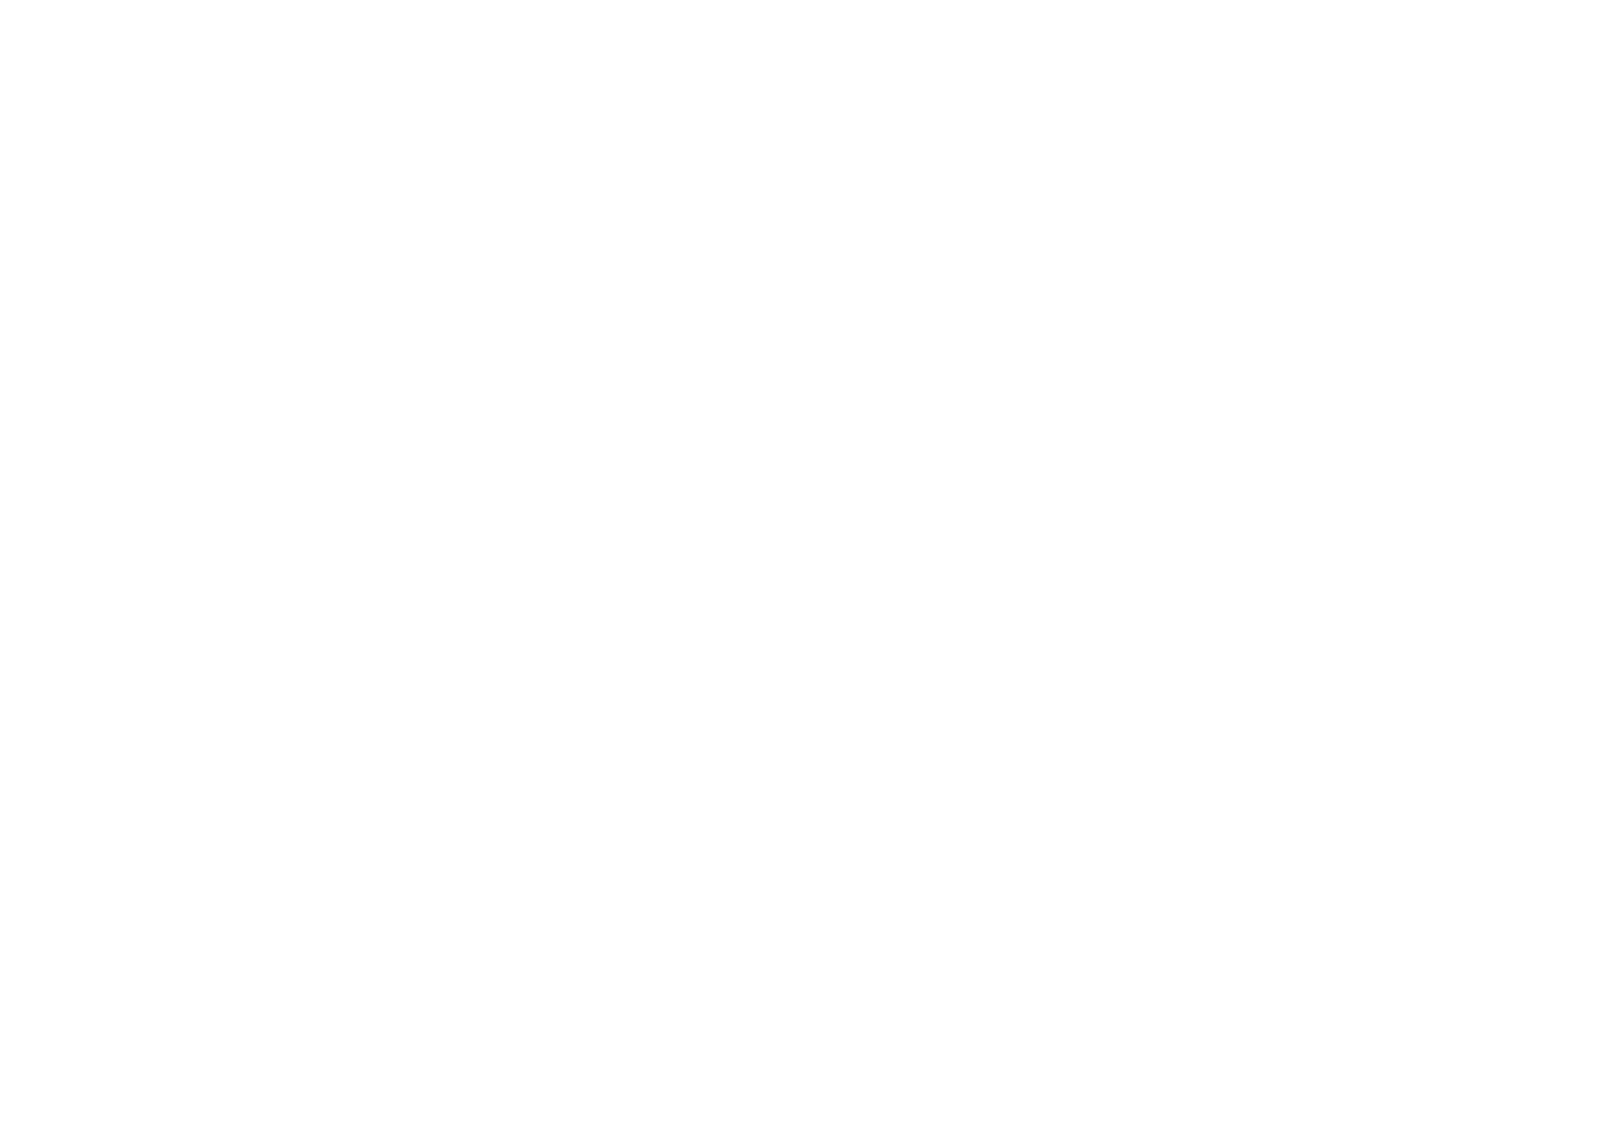 Отрисовка индивидуальной графики под гравюру для фермерского сыра Качотта Мелчевская ферма